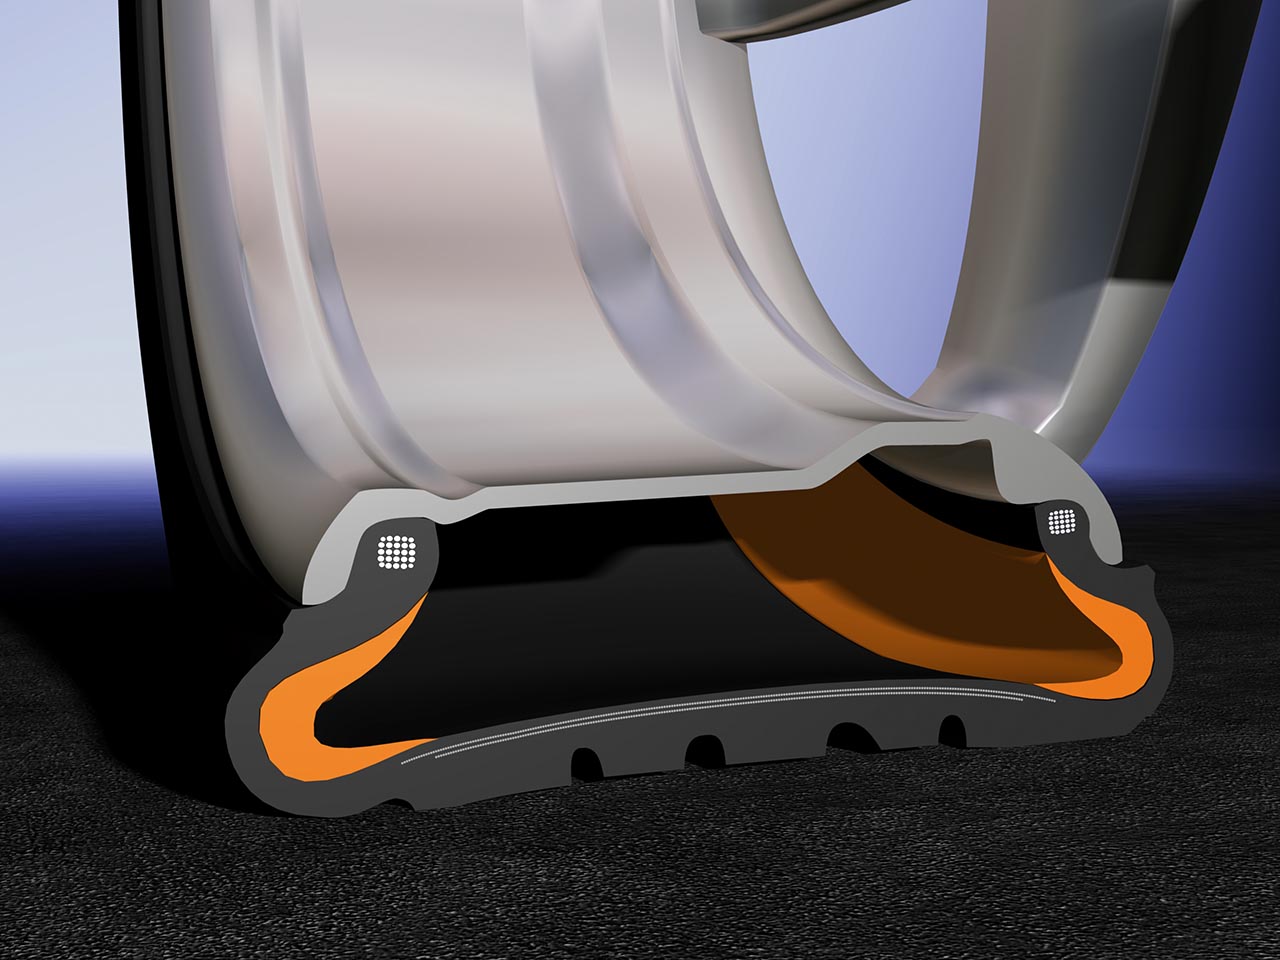 O sistema SSR é uma tecnologia runflat desenvolvida pela Continental especialmente para pneus de perfil baixo. Pneus que são compatíveis com todas os modelos padrões de rodas. O princípio SSR é baseado em uma parede lateral reforçada que se auto sustenta. No caso de um furo, isso evita que a parede lateral seja esmagada entre o aro e a estrada ou escorregue do aro. (imagem 3d em close do corte do pneu e roda com a tecnologia)